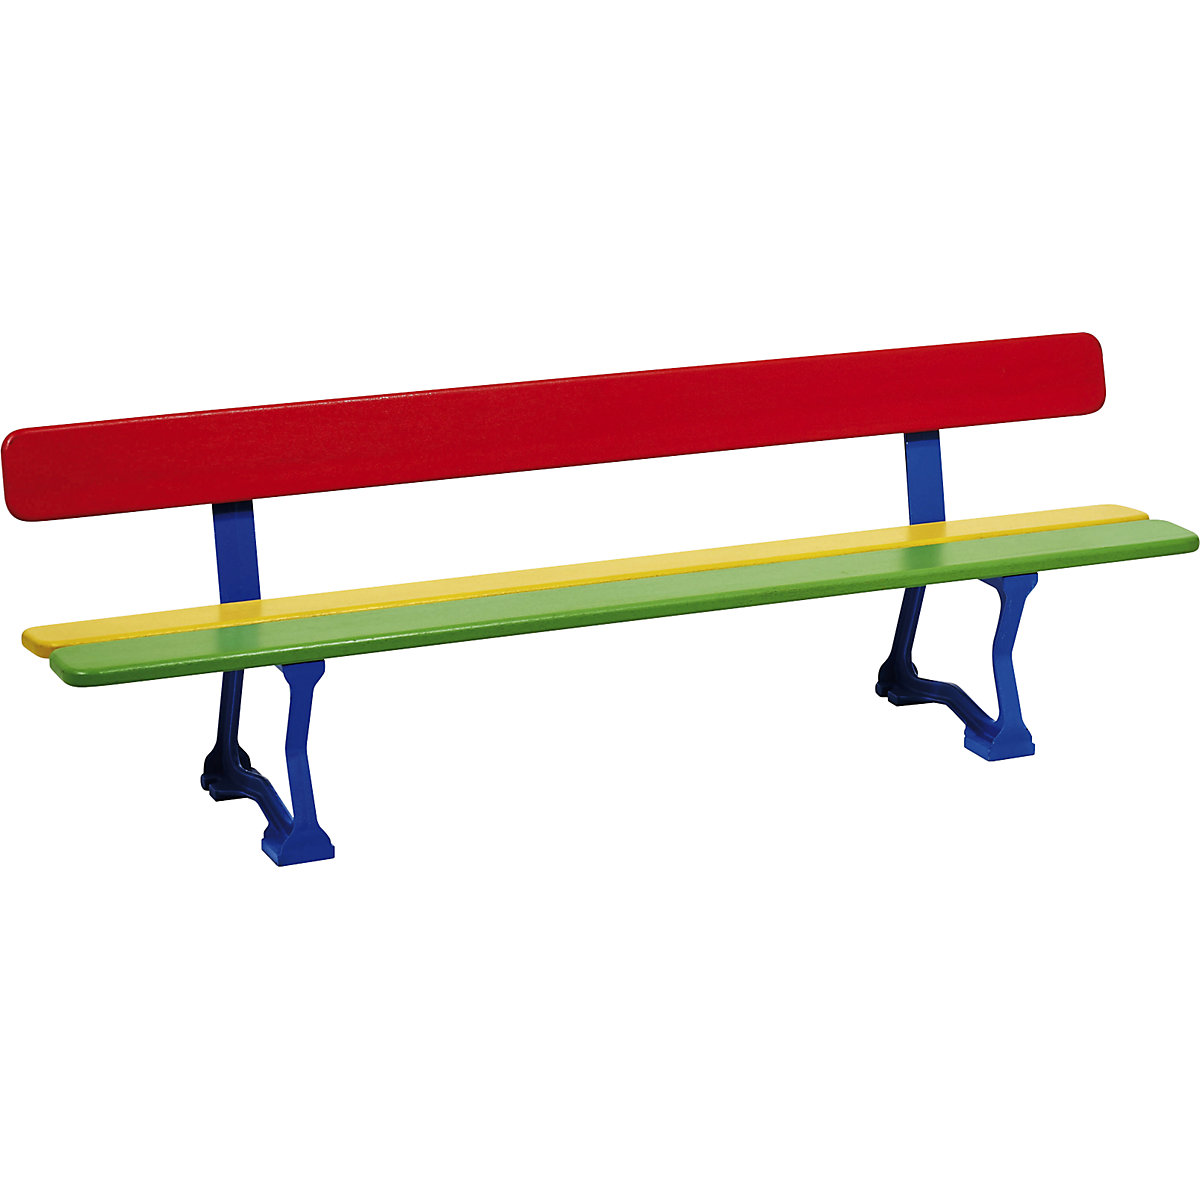 MORA bench for children - PROCITY